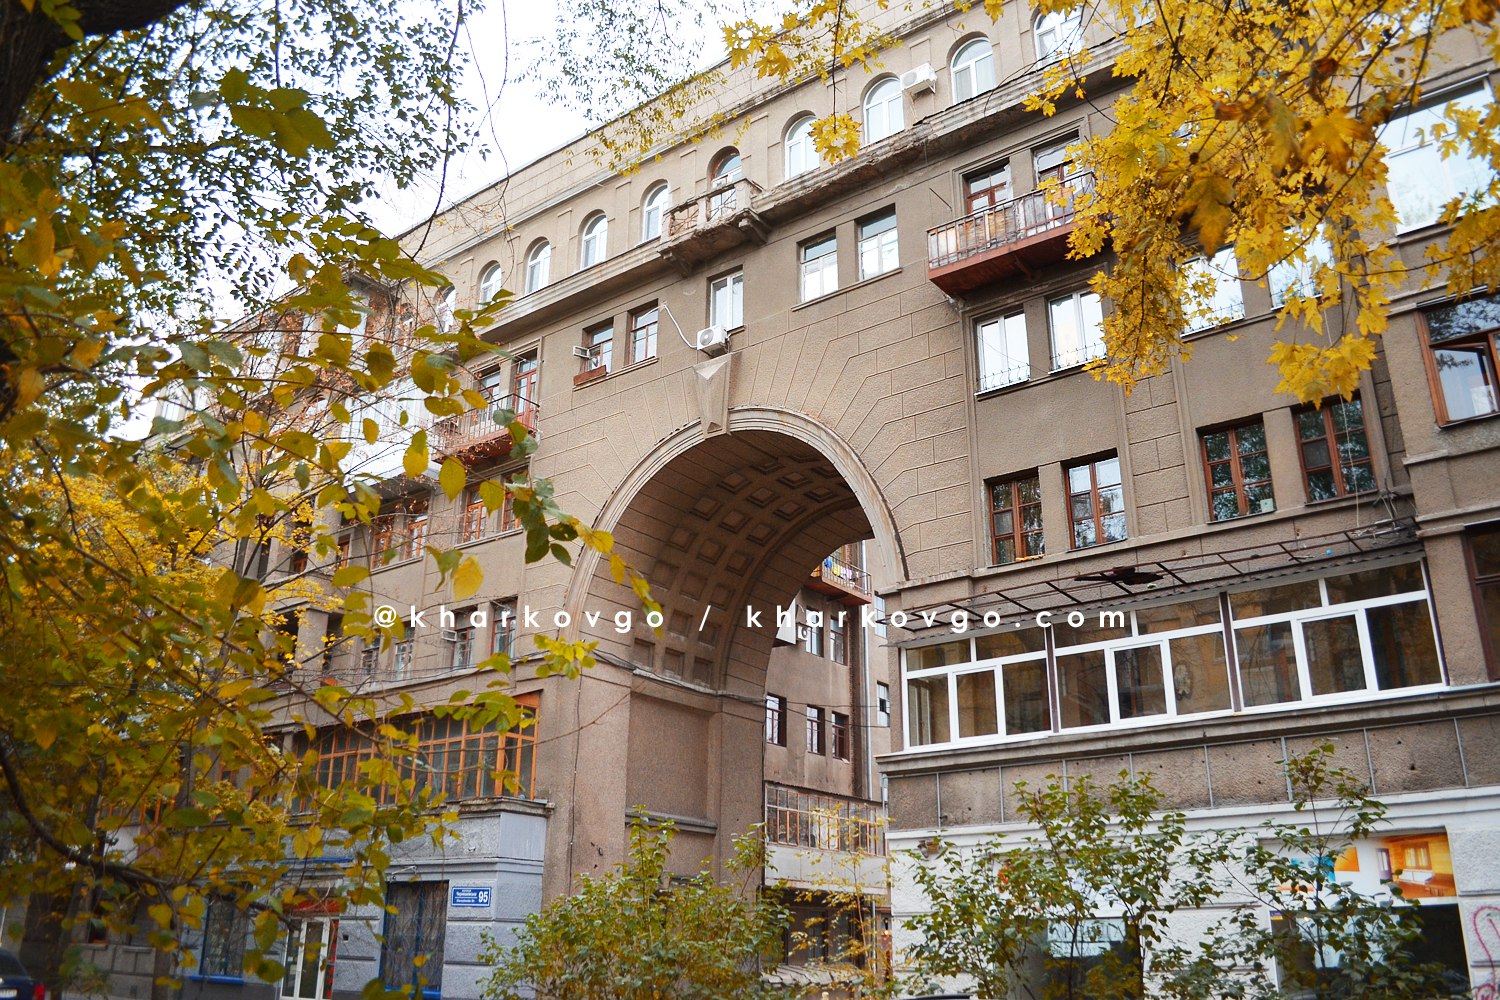 Дом с самой большой аркой | Харьков – куда б сходить?